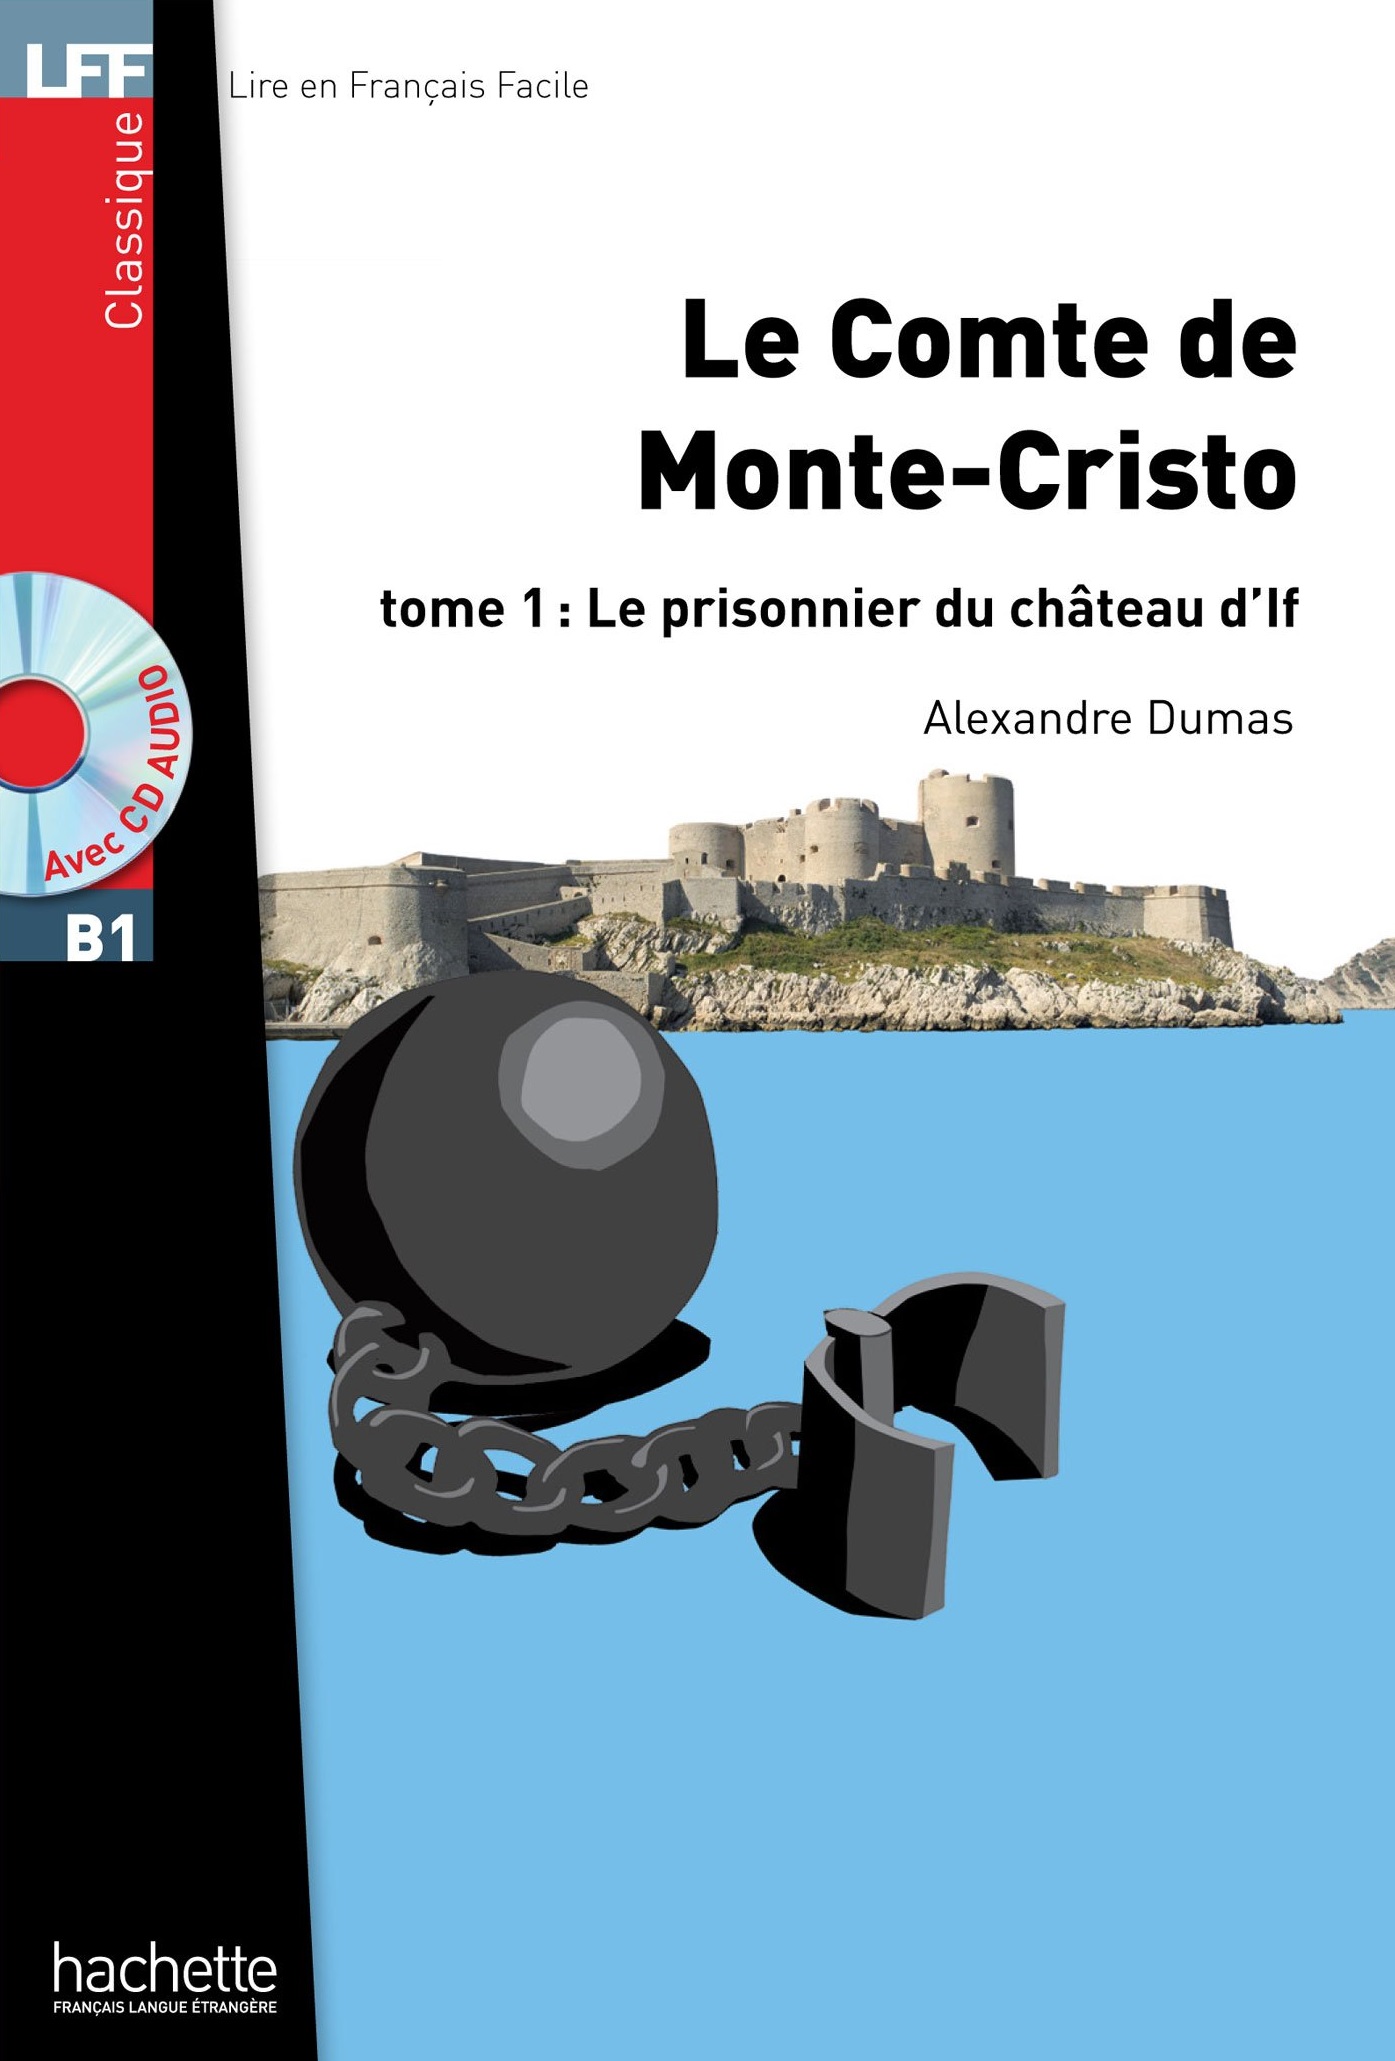 Le Comte de Monte Cristo. Tome 1 + CD audio